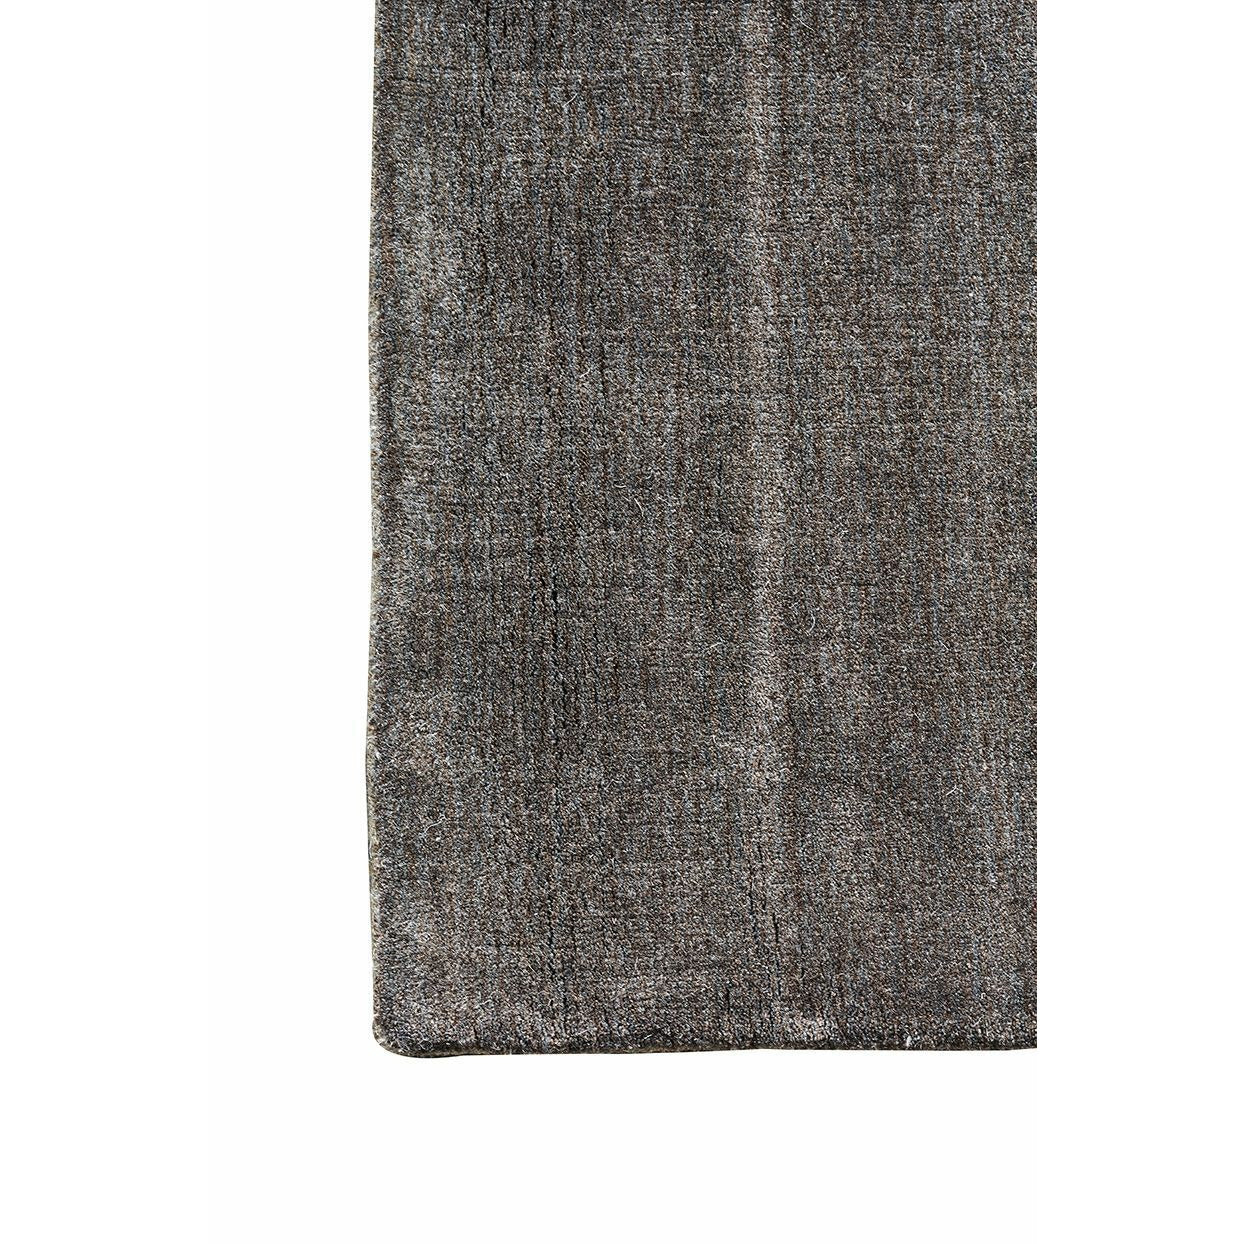 Massimo Maan bambu matto lämmin harmaa, 300x400 cm